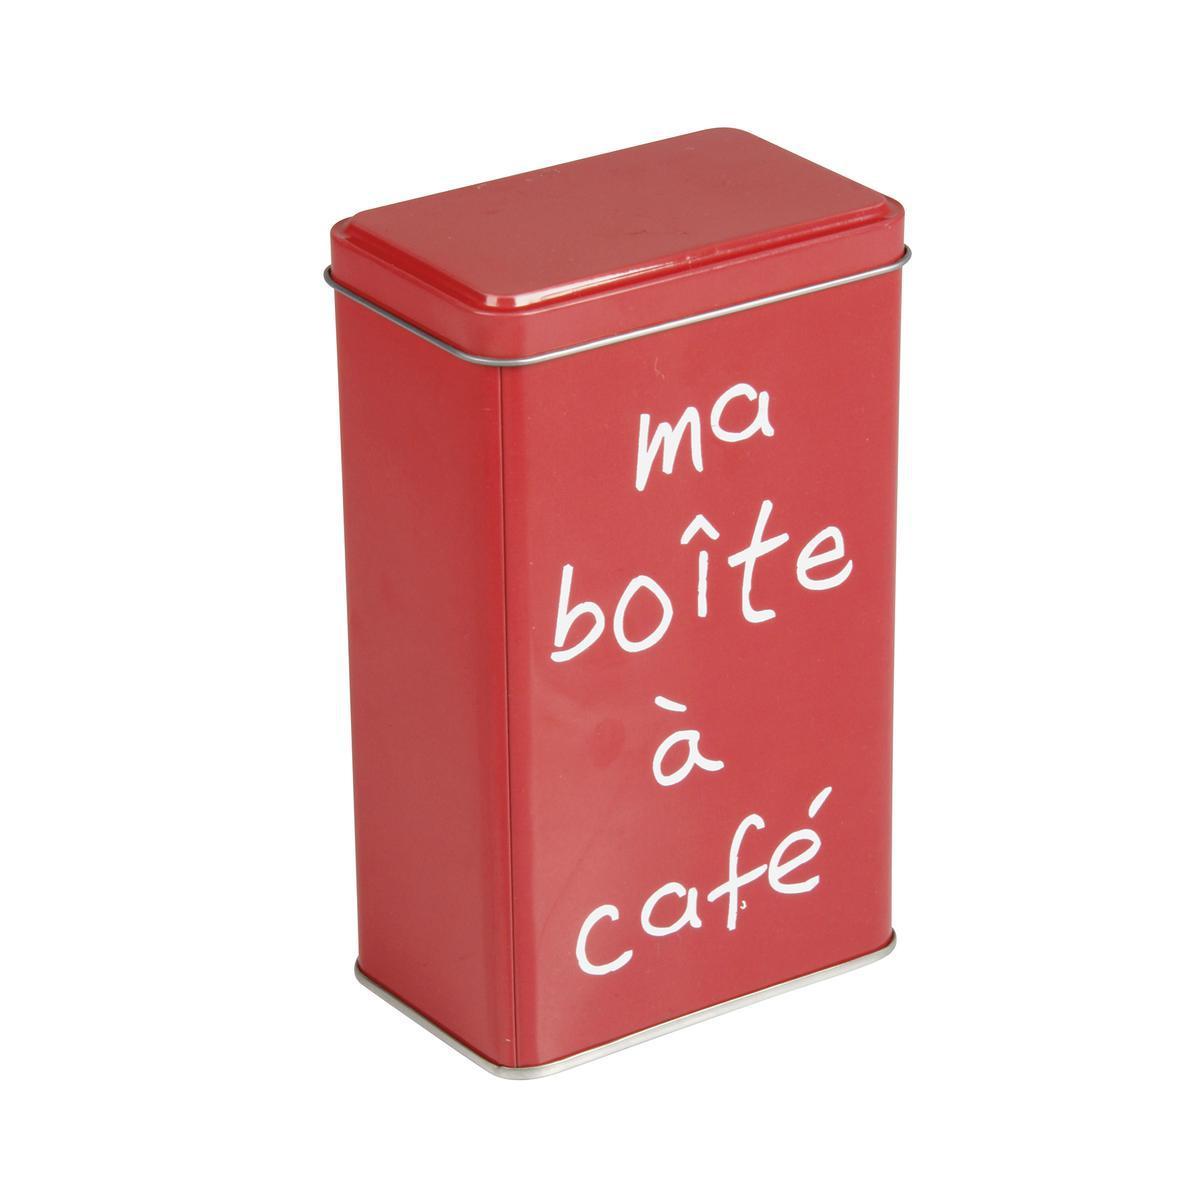 Boîte à café rectangulaire - Acier inoxydable 16 x 9,5 x 6 cm - Multicolore